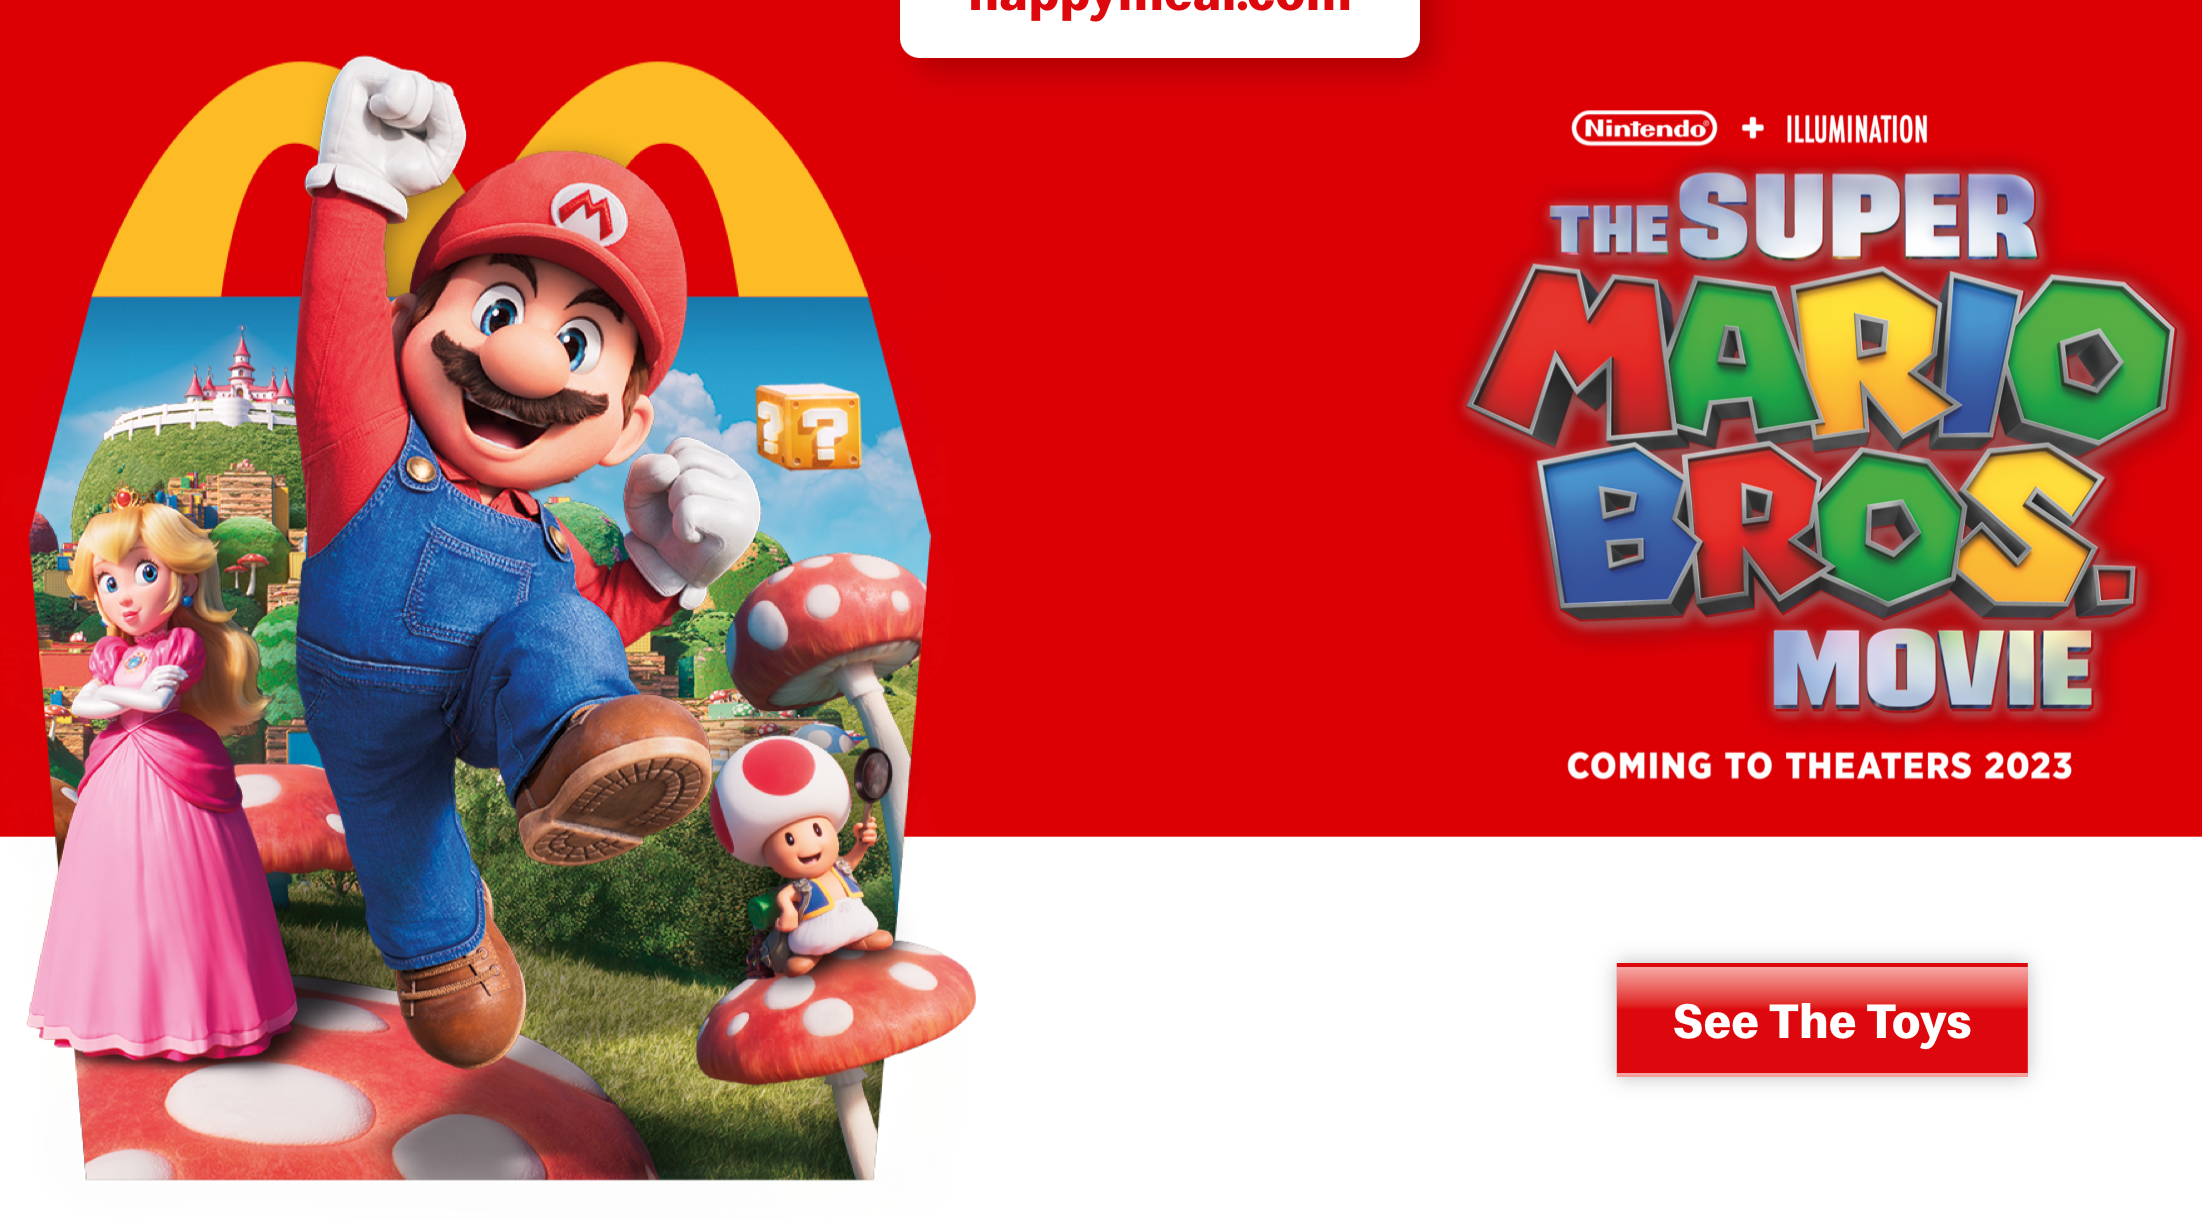 2022 McDONALD'S Super Mario Bros Movie Nintendo HAPPY MEAL TOYS Or Set